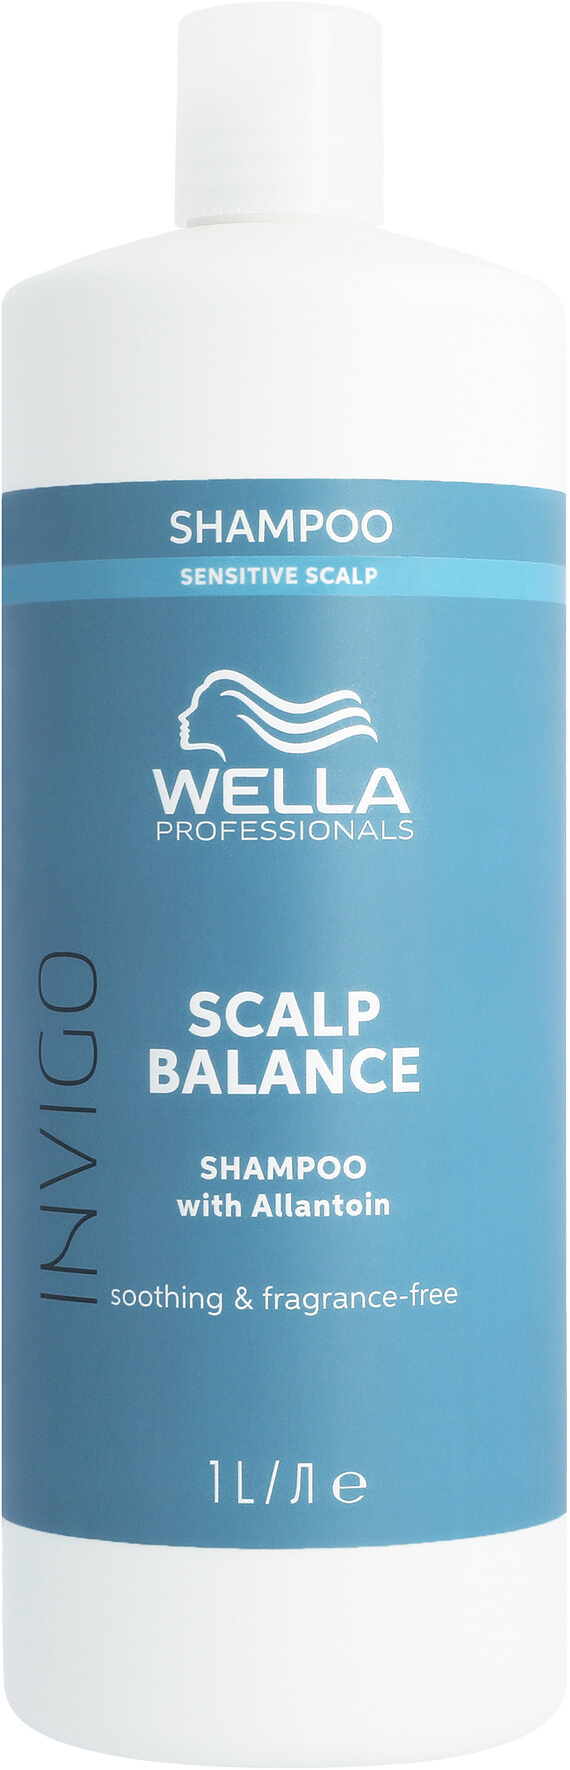 Wella Invigo Balance Calm Shampoo für empfindliche Kopfhaut 